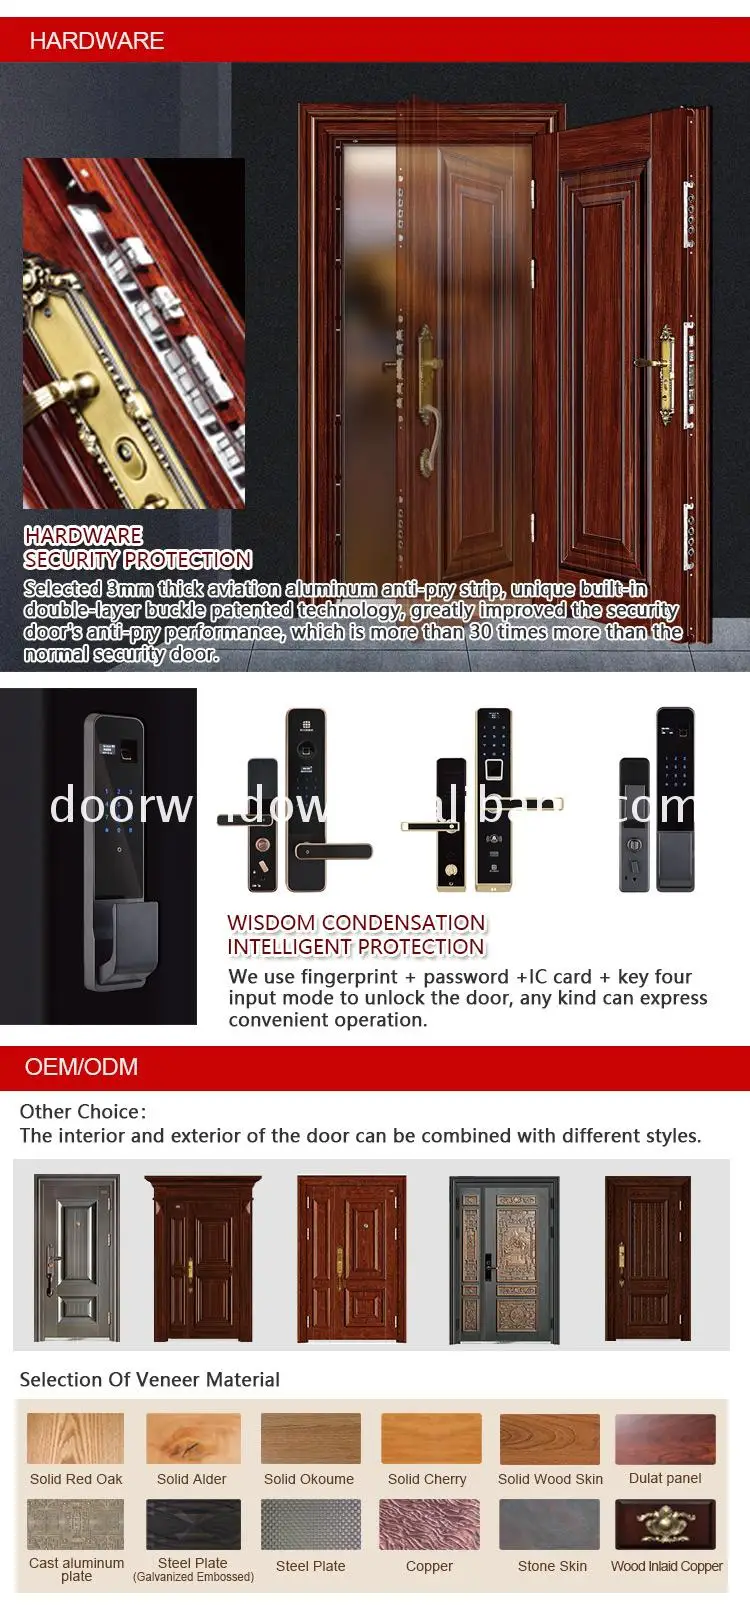 Hot sale factory direct modern interior door styles double entry doors metal hinges